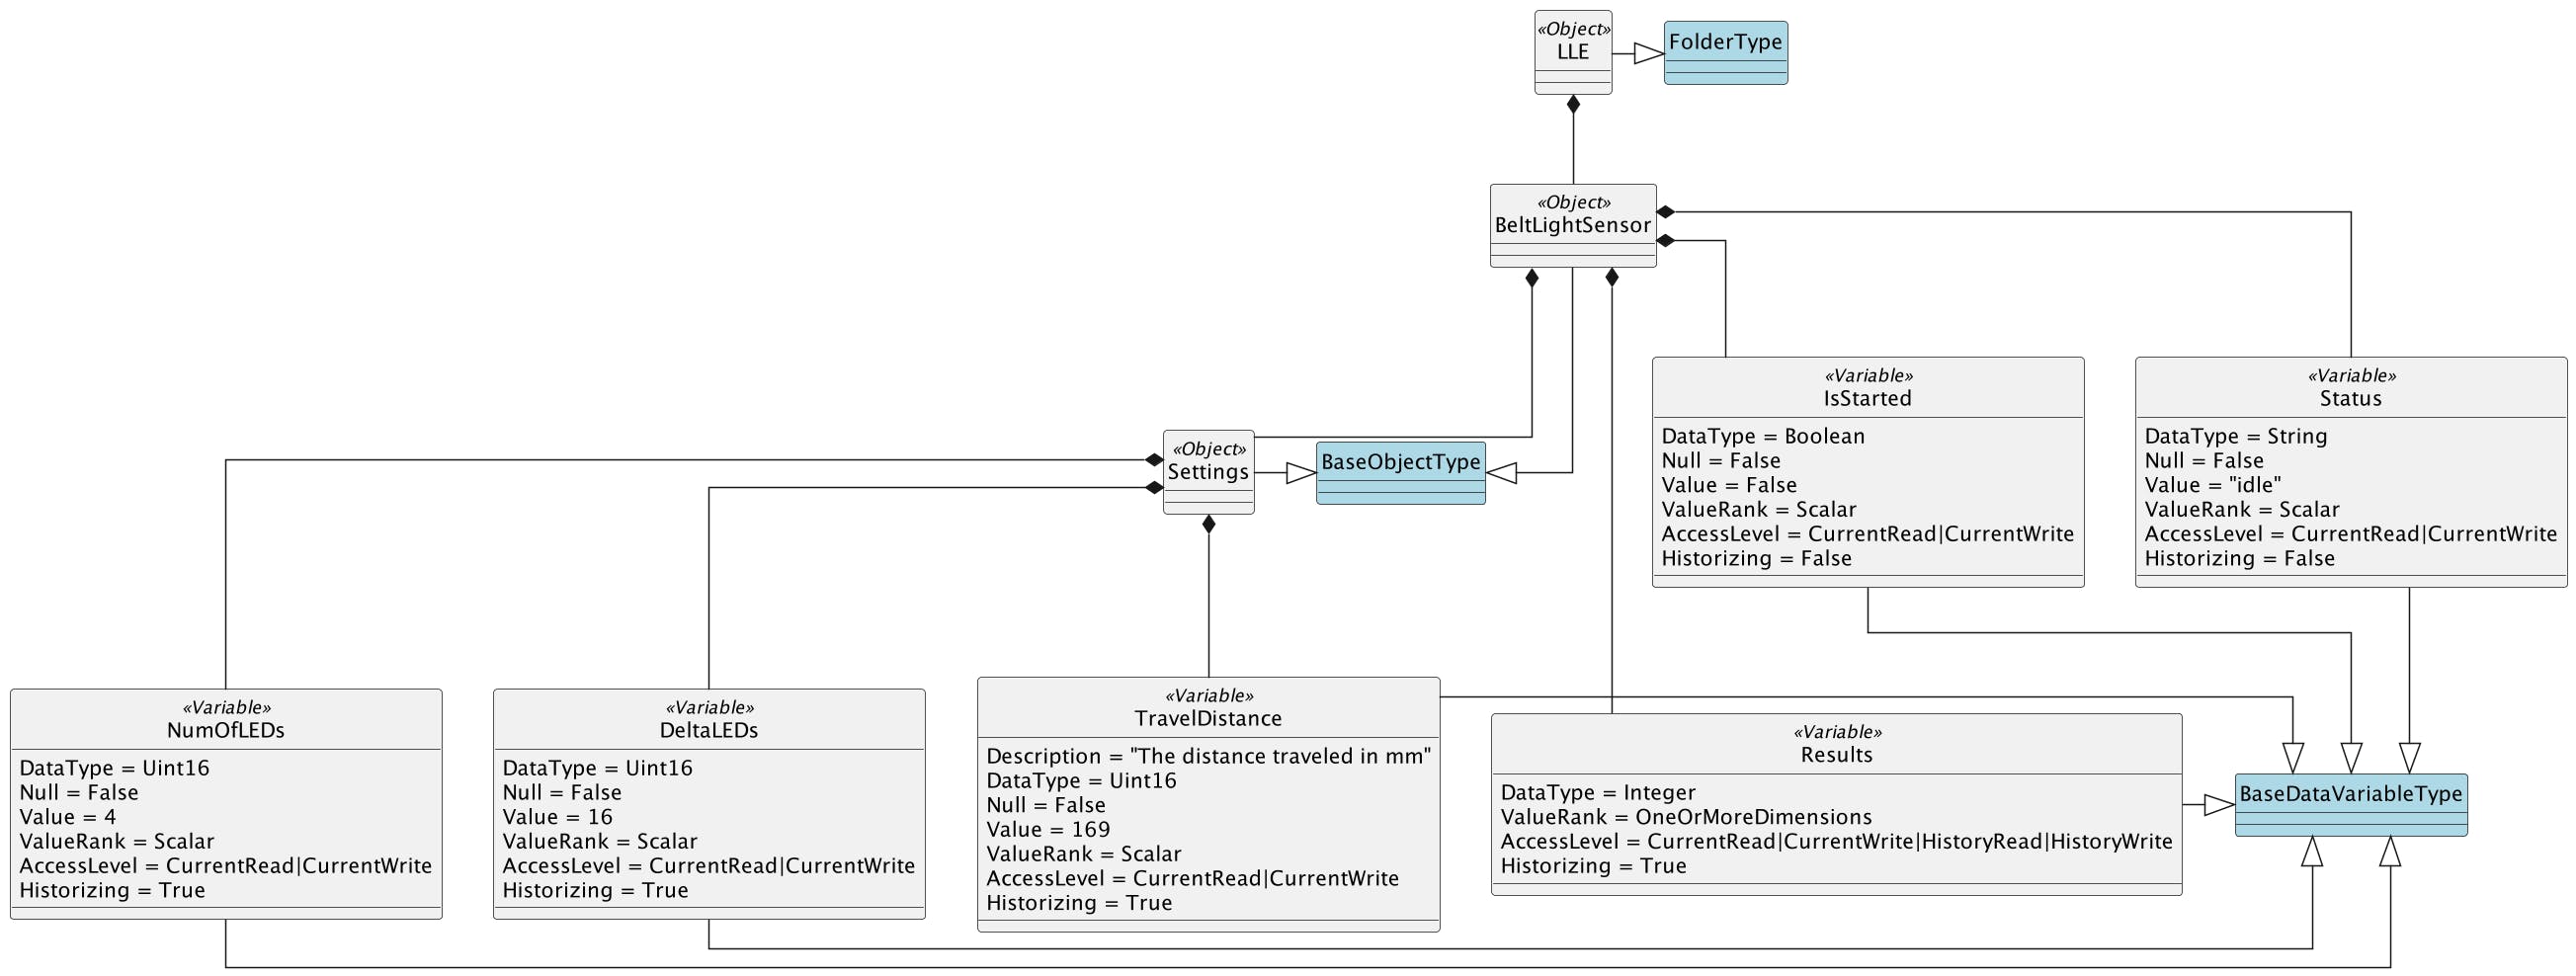 Information model of BLS for OPC-UA Server in UML notation